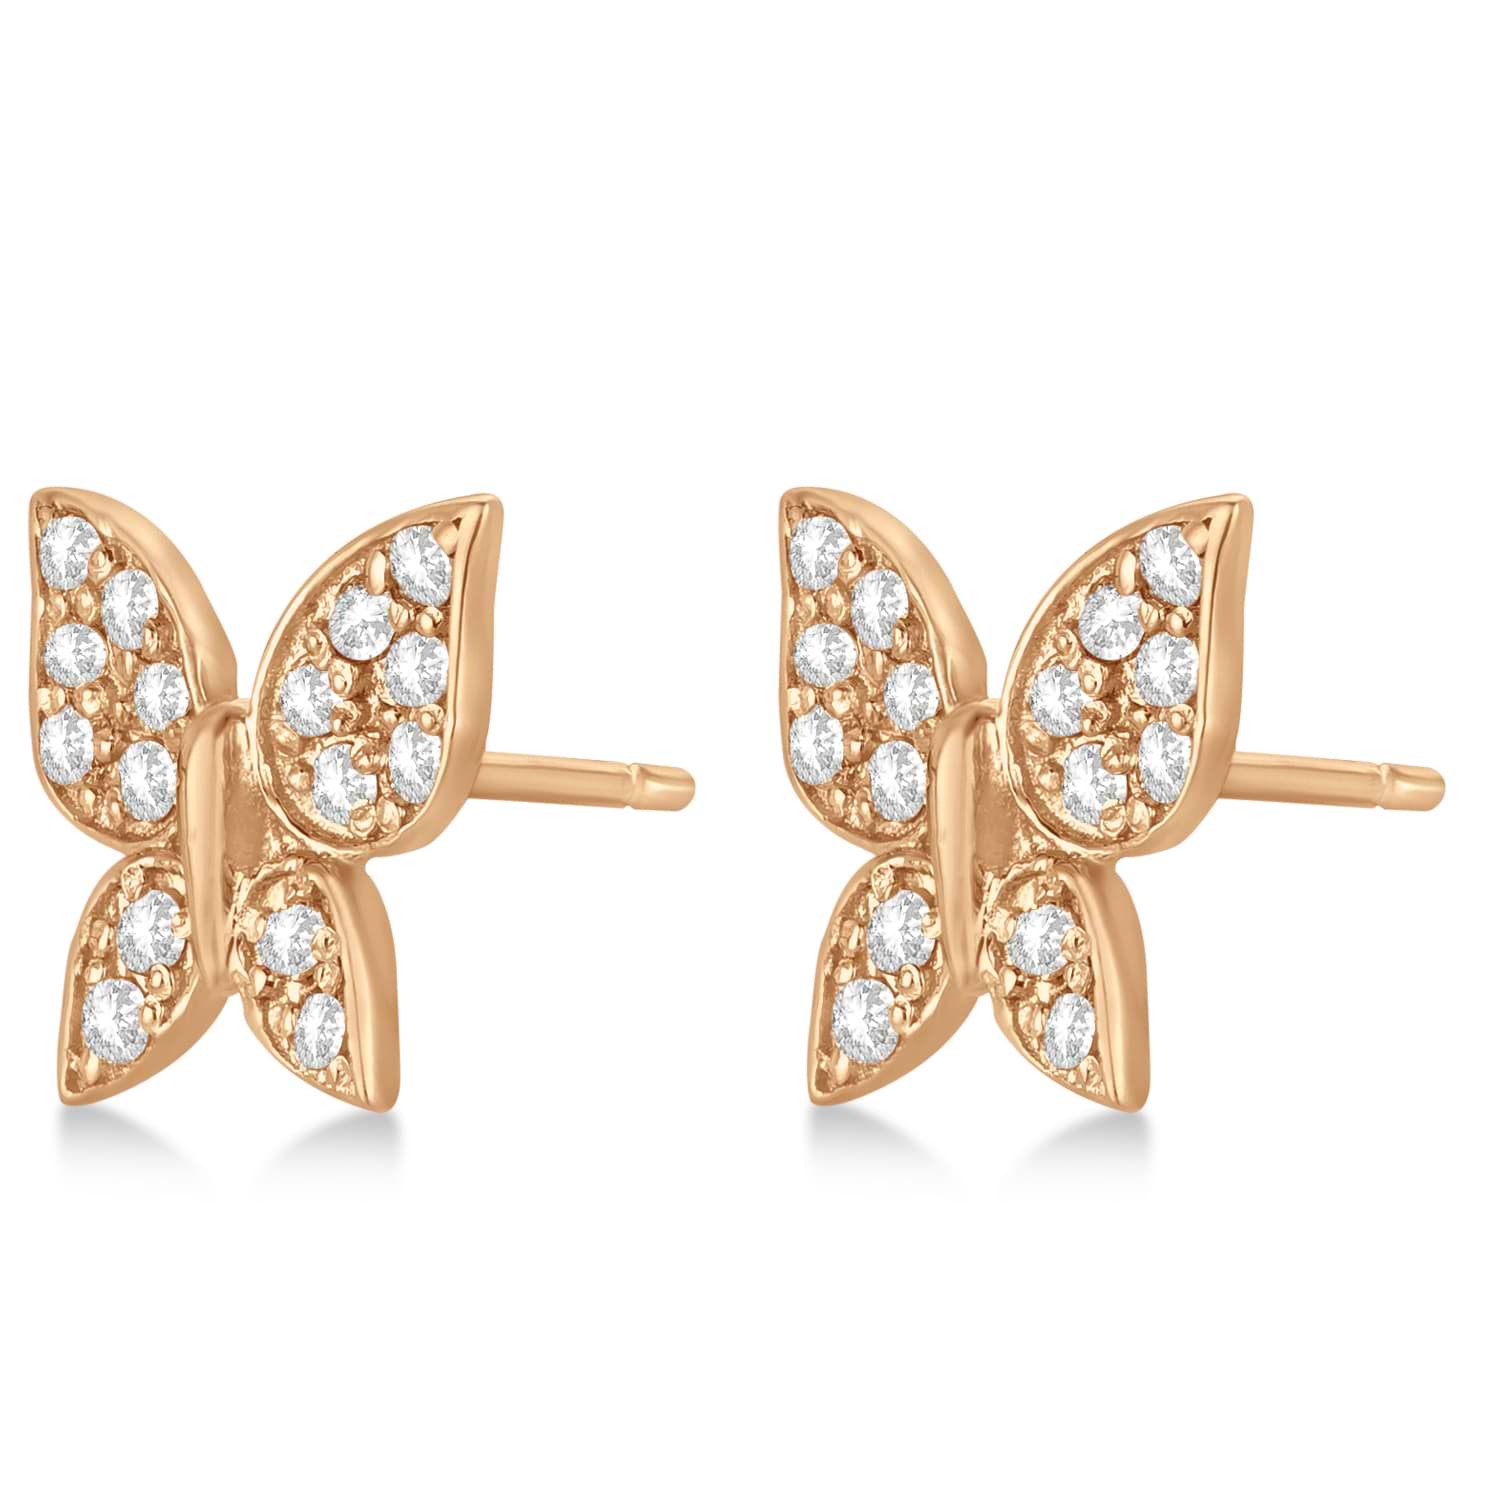 Diamond Butterfly Stud Earrings 14k Rose Gold (0.30ct)